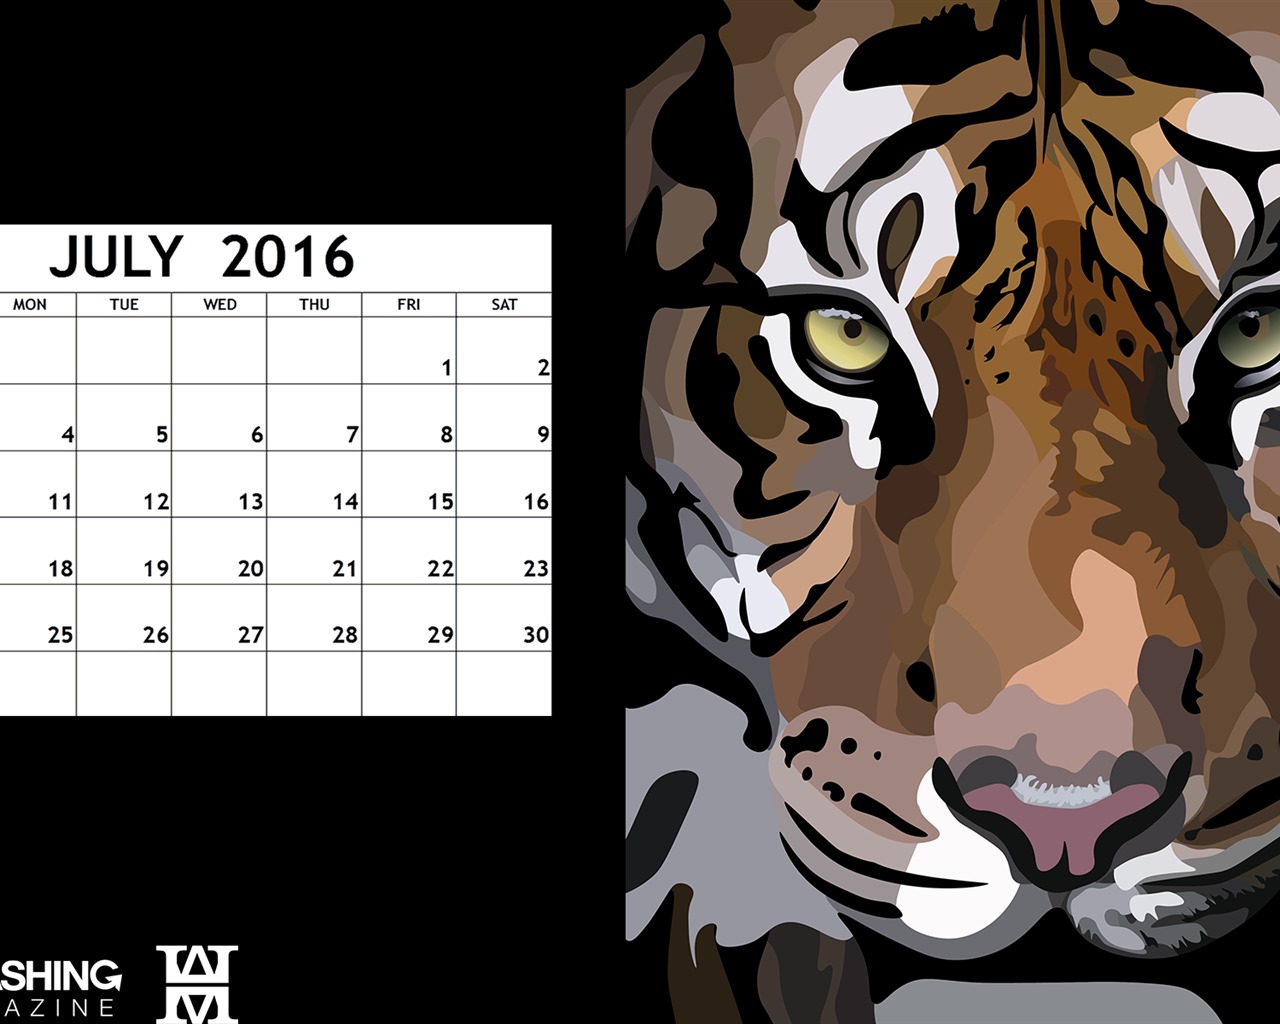 July 2016 calendar wallpaper (2) #18 - 1280x1024